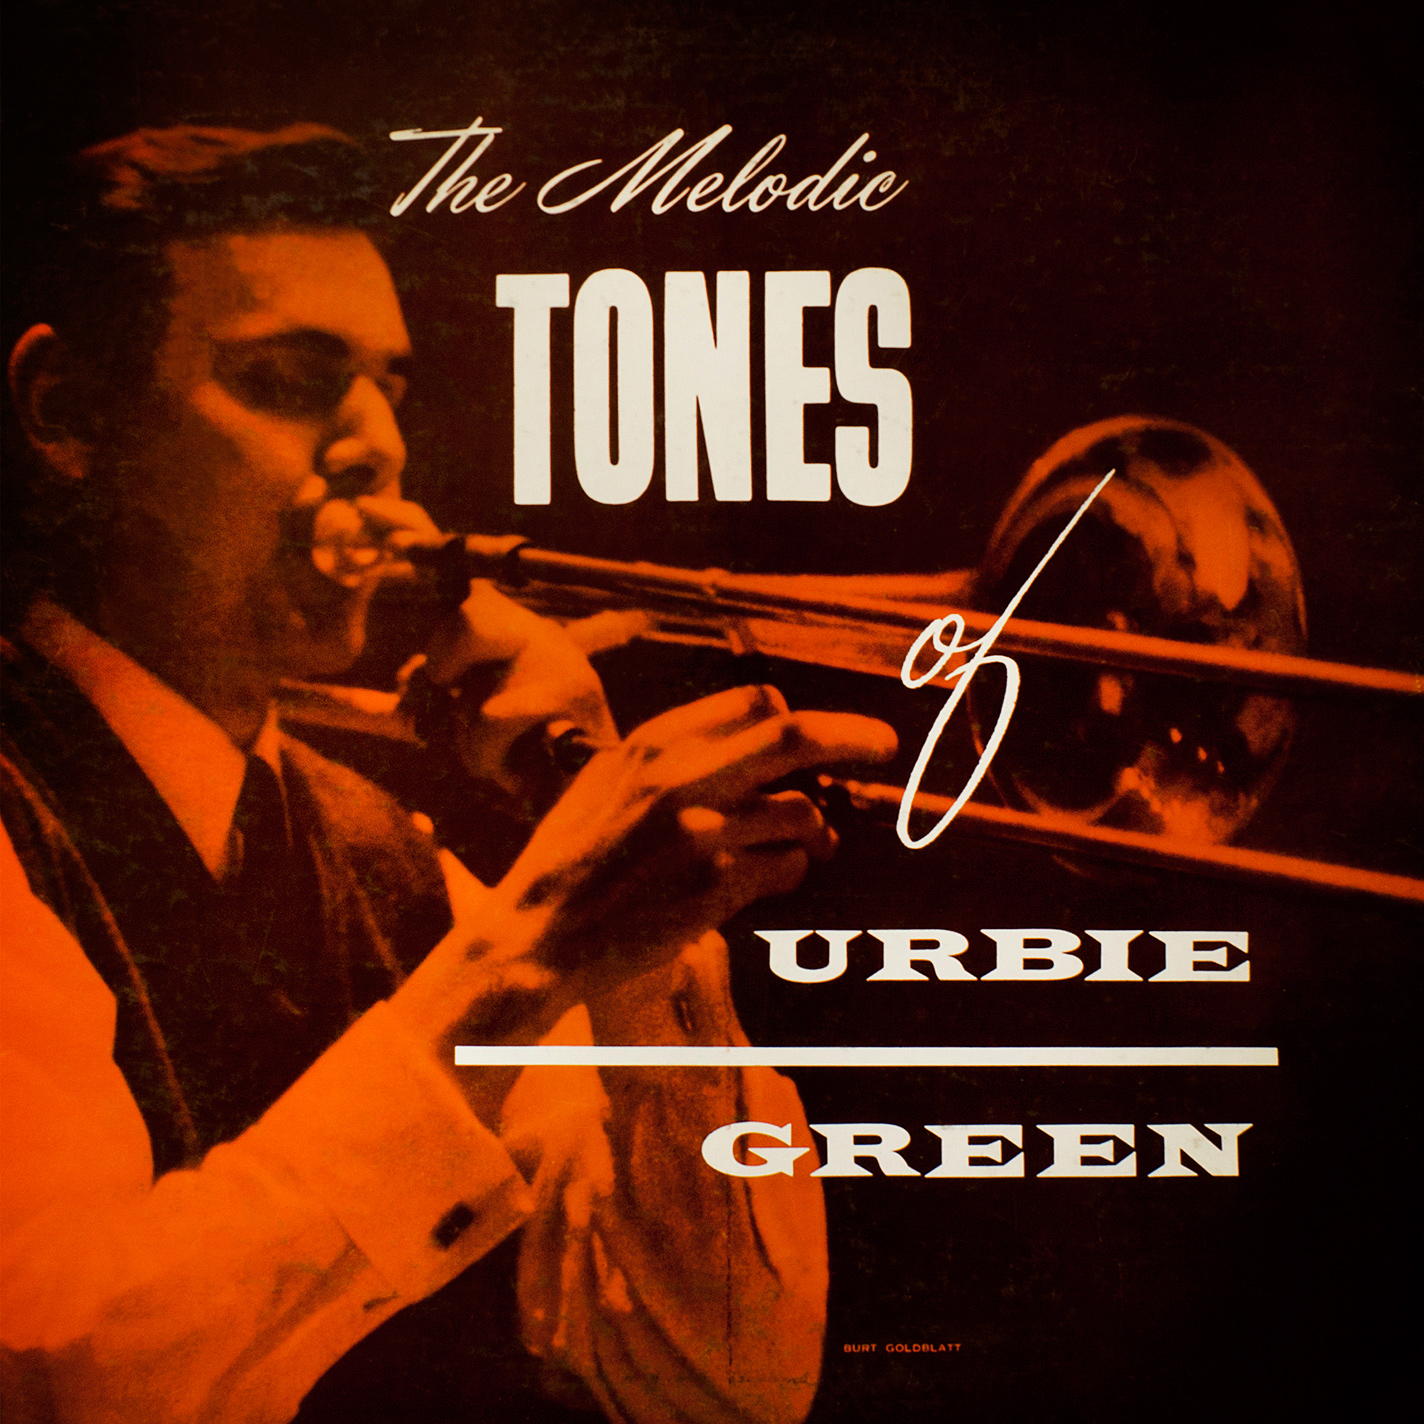 East Coast Jazz, Vol.6 – Urbie Green (1955/2014) [PrestoClassical FLAC 24bit/96kHz]